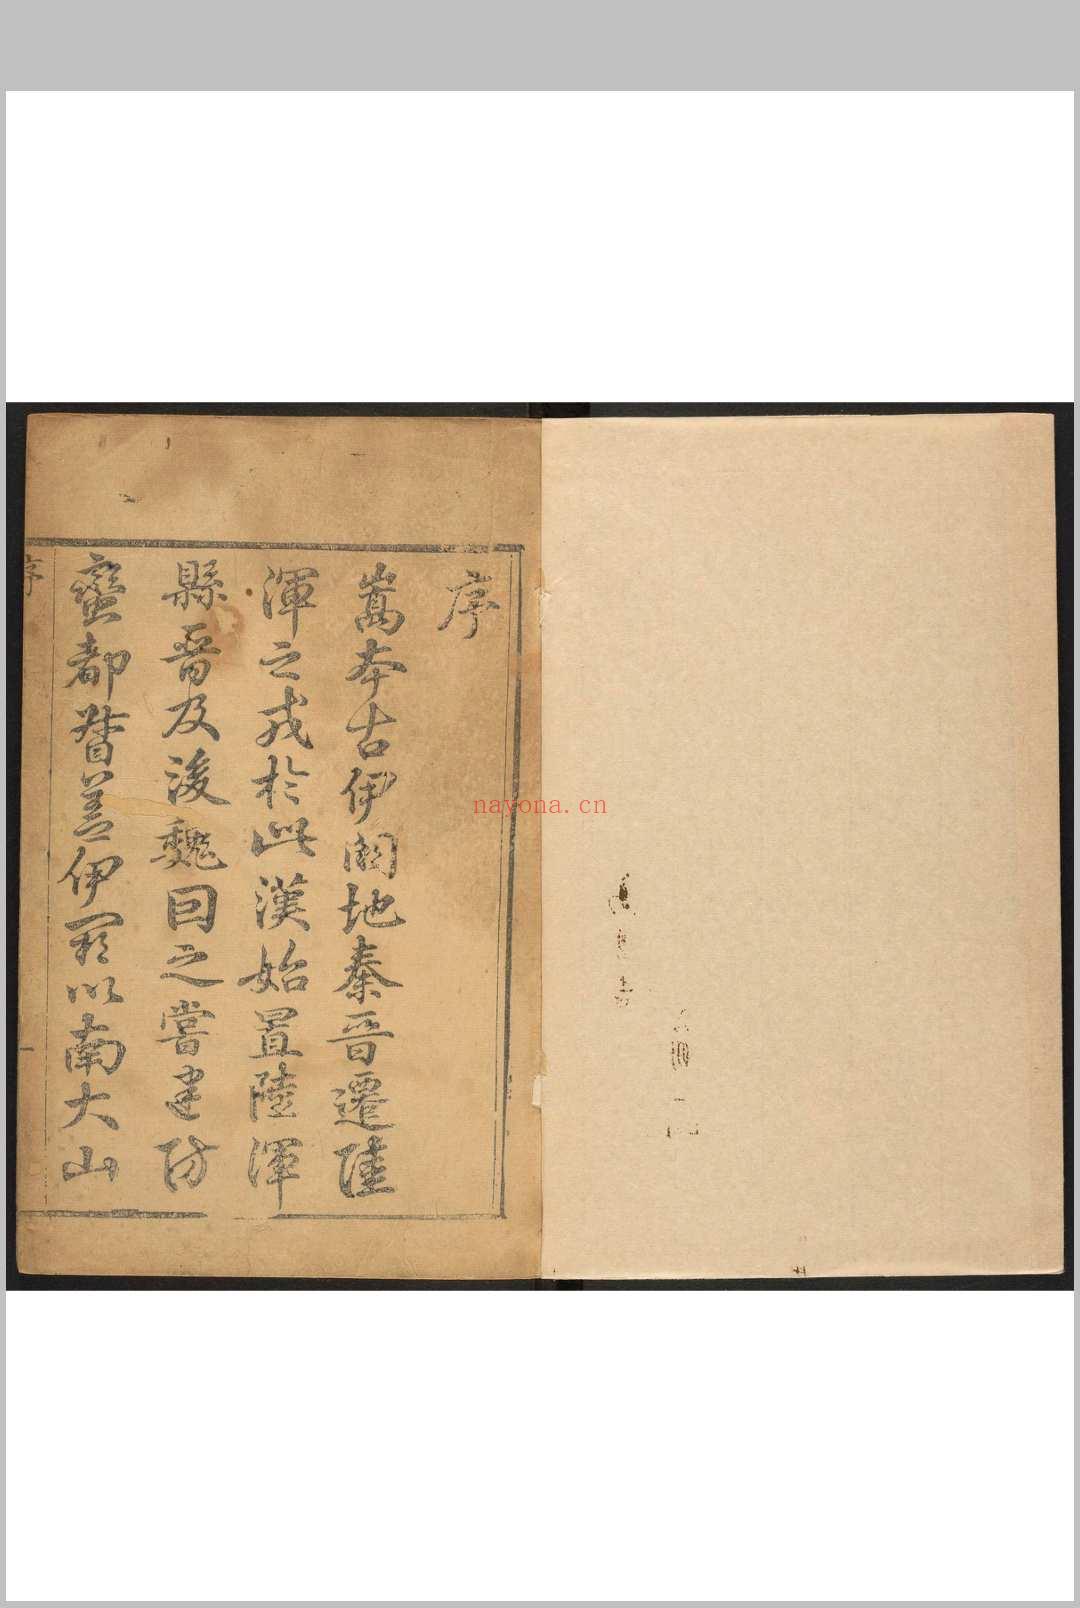 嵩县志  三十卷, 卷首一卷 康基渊纂修.清乾隆32年 [1767]